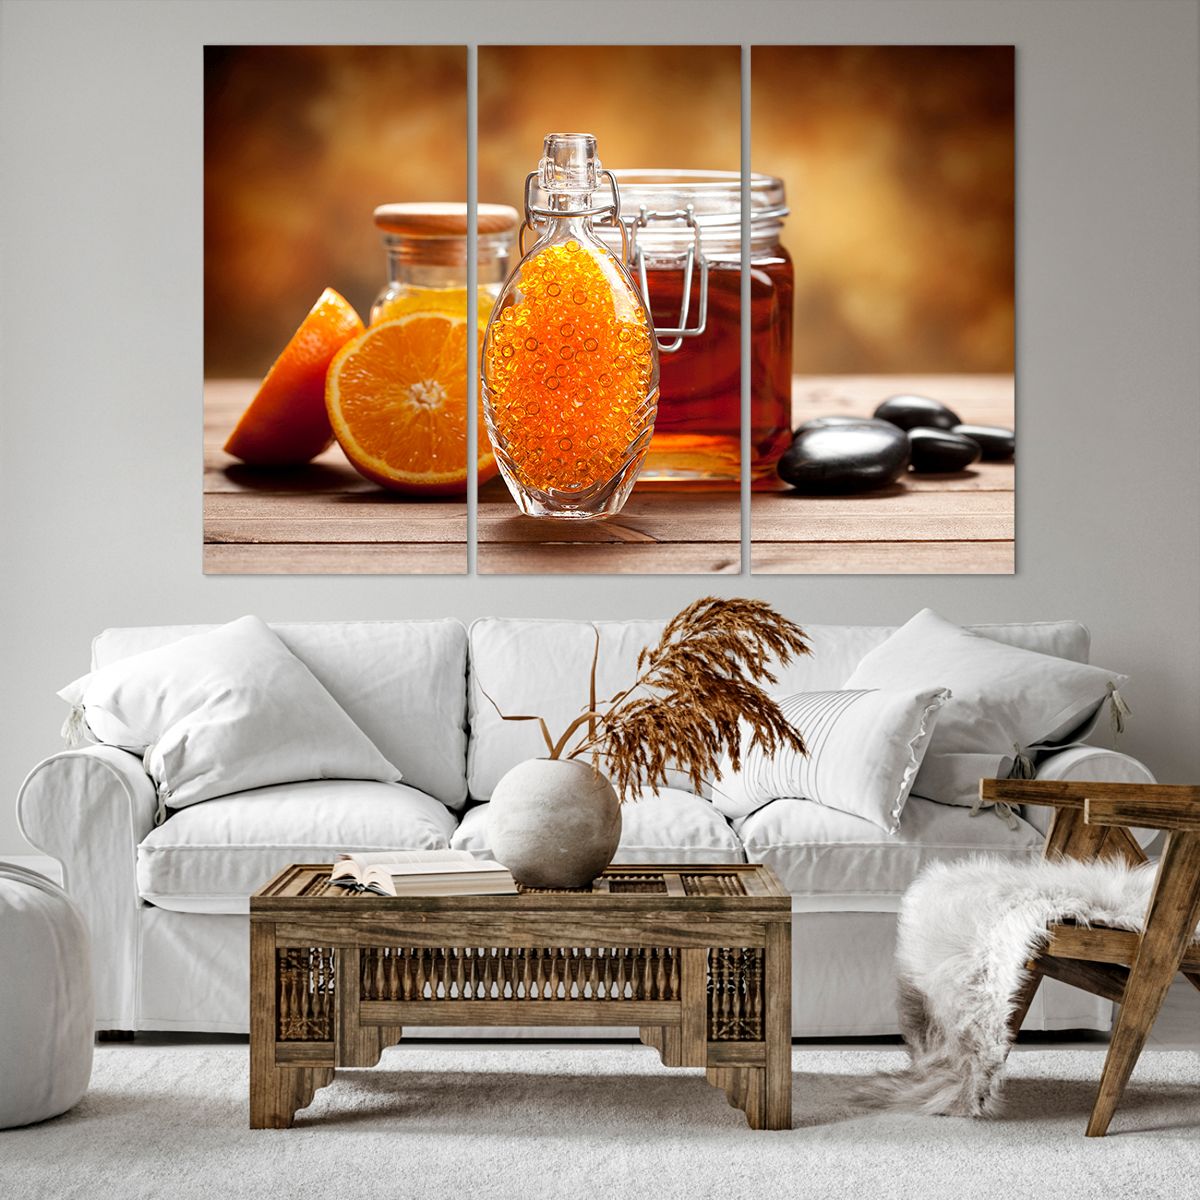 Bild auf Leinwand Gastronomie, Bild auf Leinwand Orange, Bild auf Leinwand Glas Mit Honig, Bild auf Leinwand Steine, Bild auf Leinwand Orangen